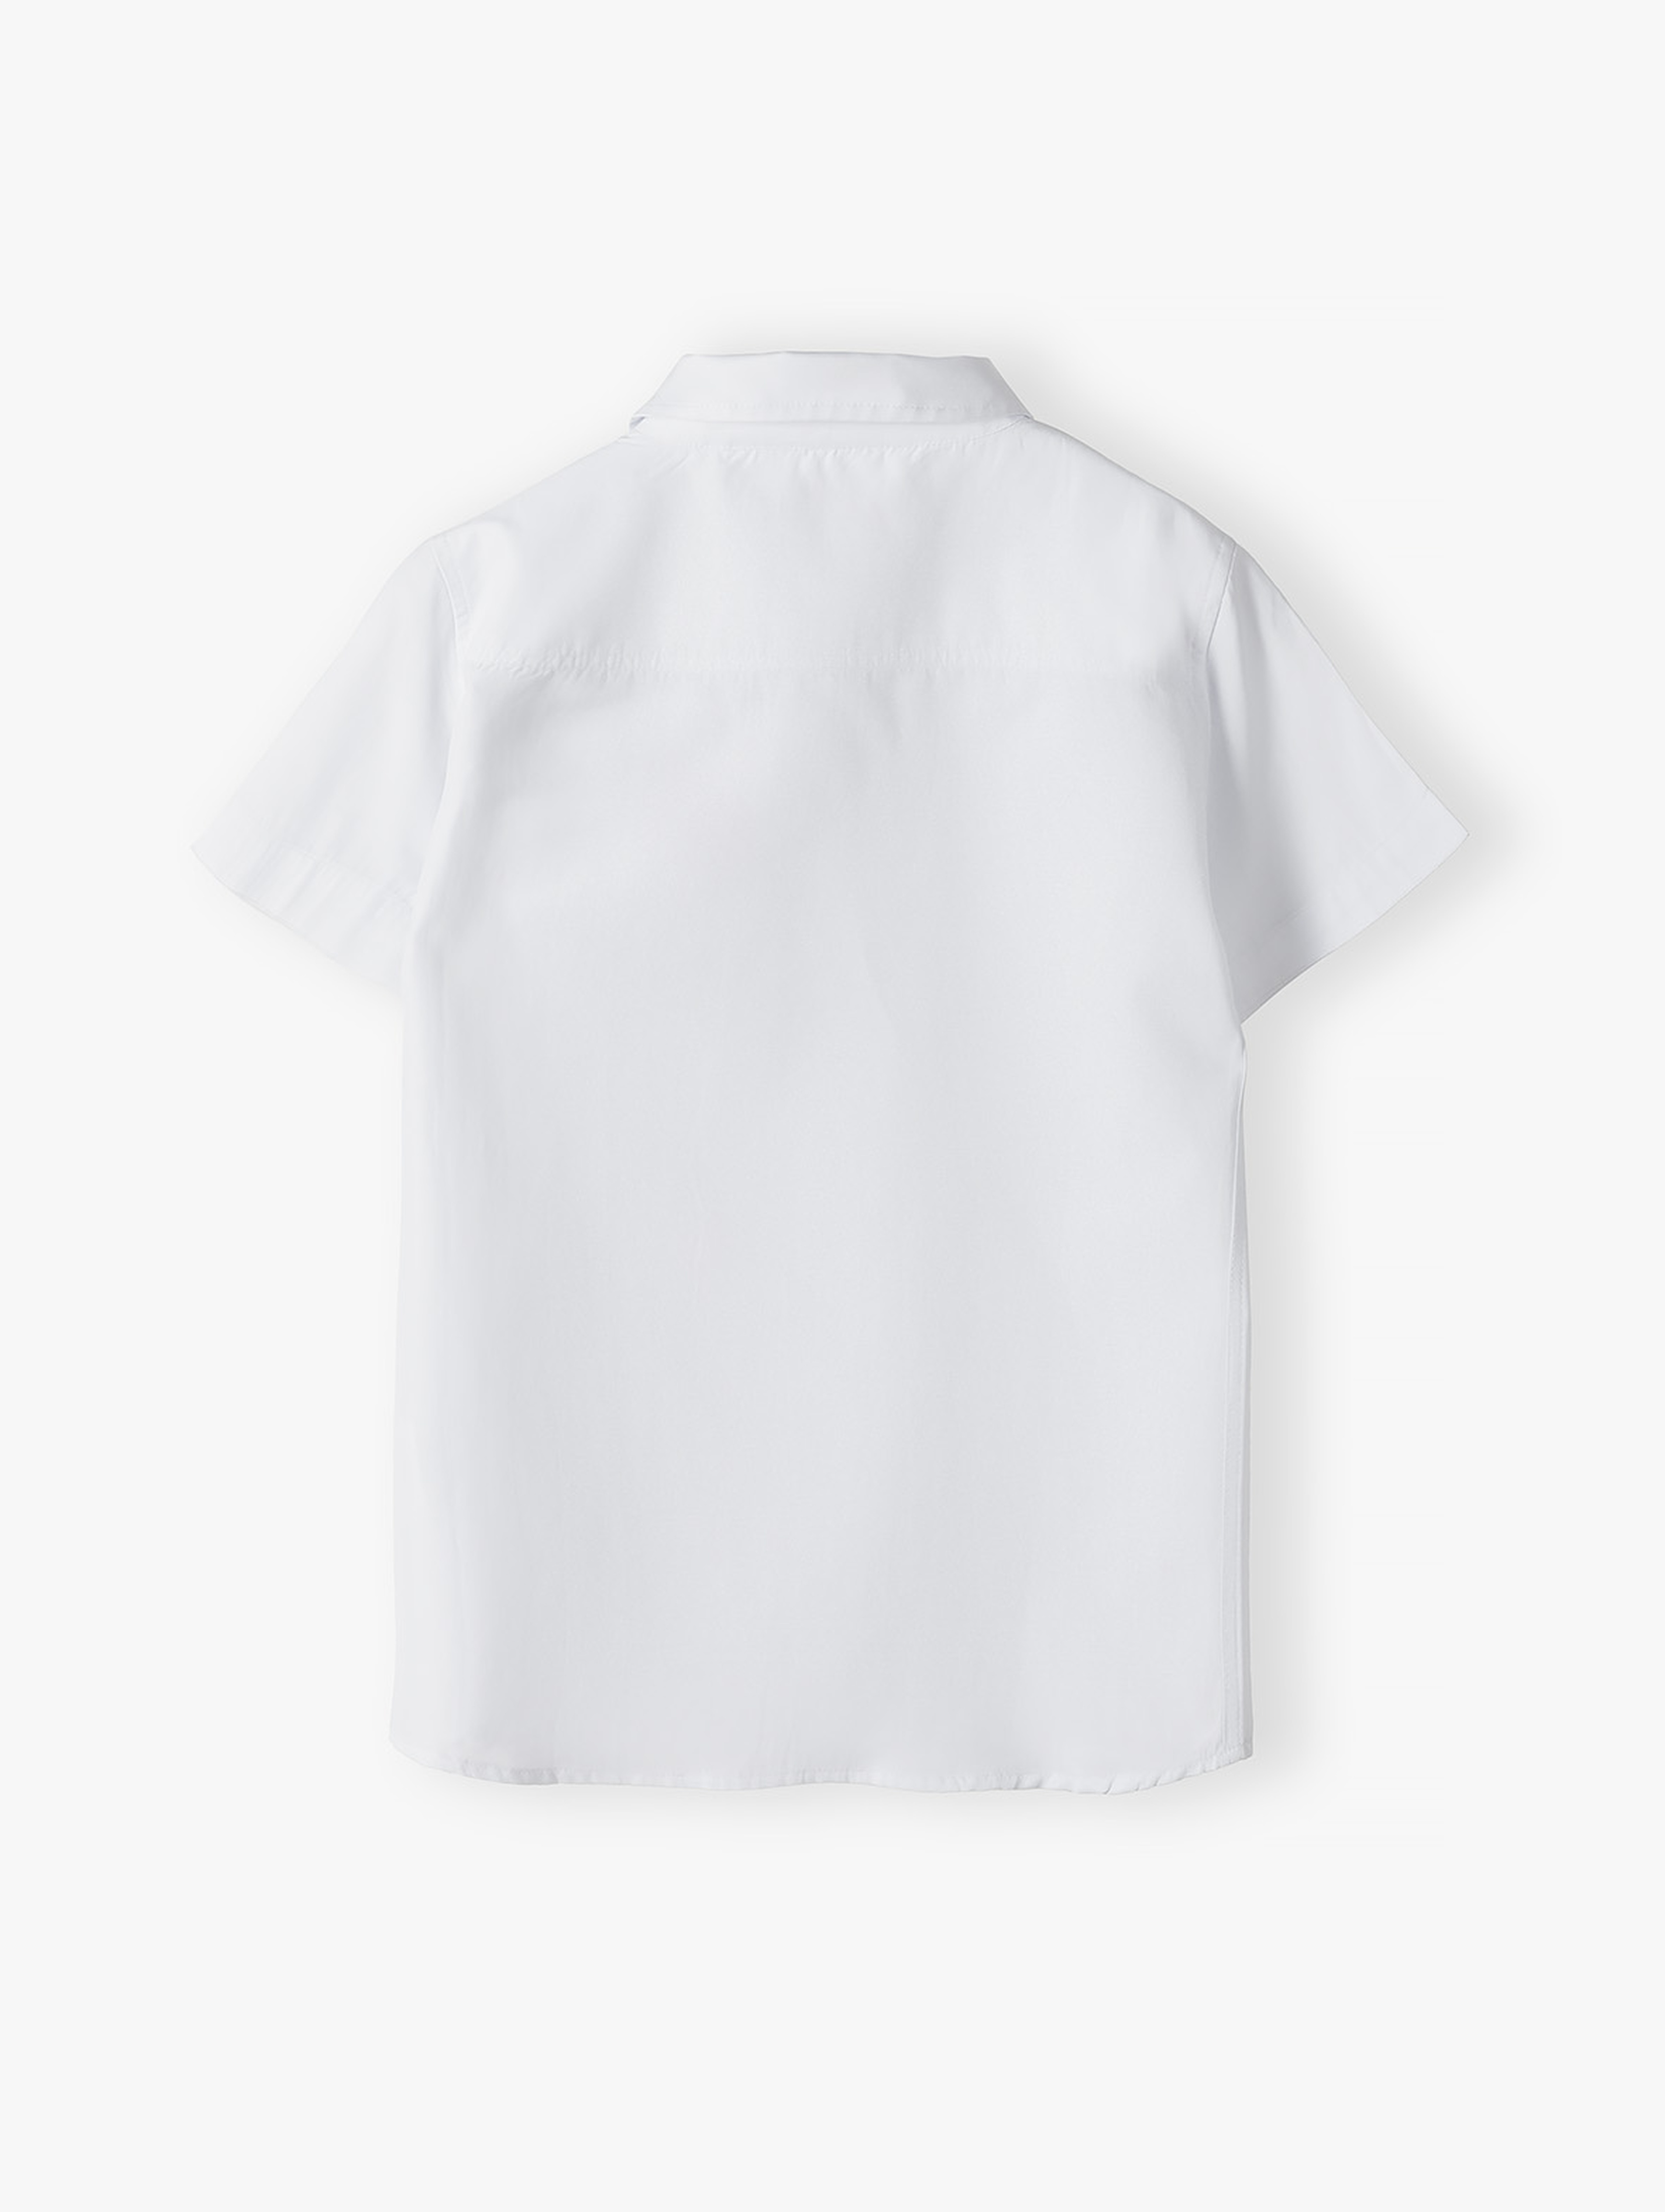 Biała koszula dla chłopca - krótki rękaw